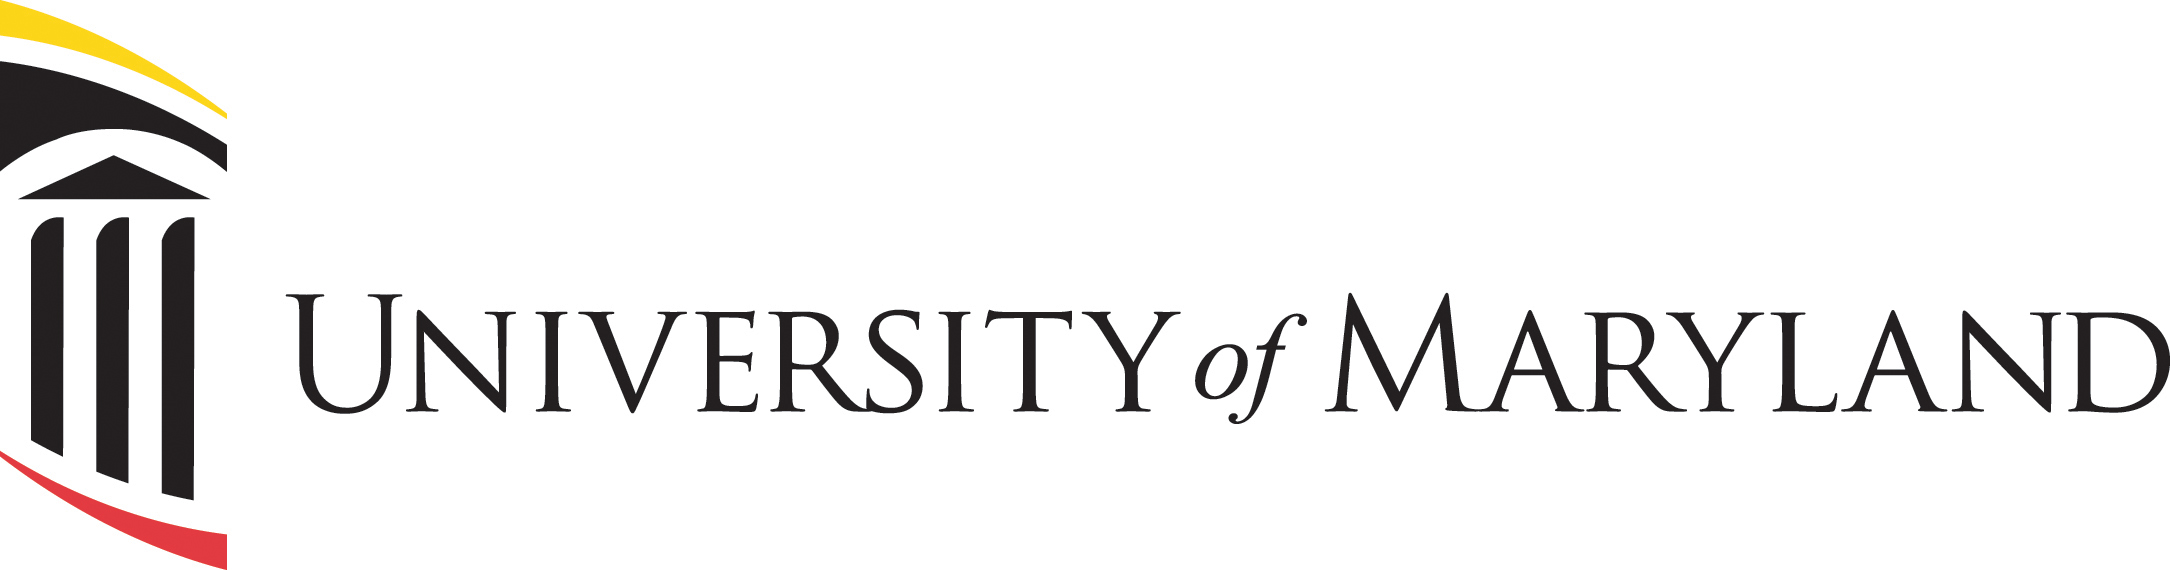 University of Maryland umbrella logo